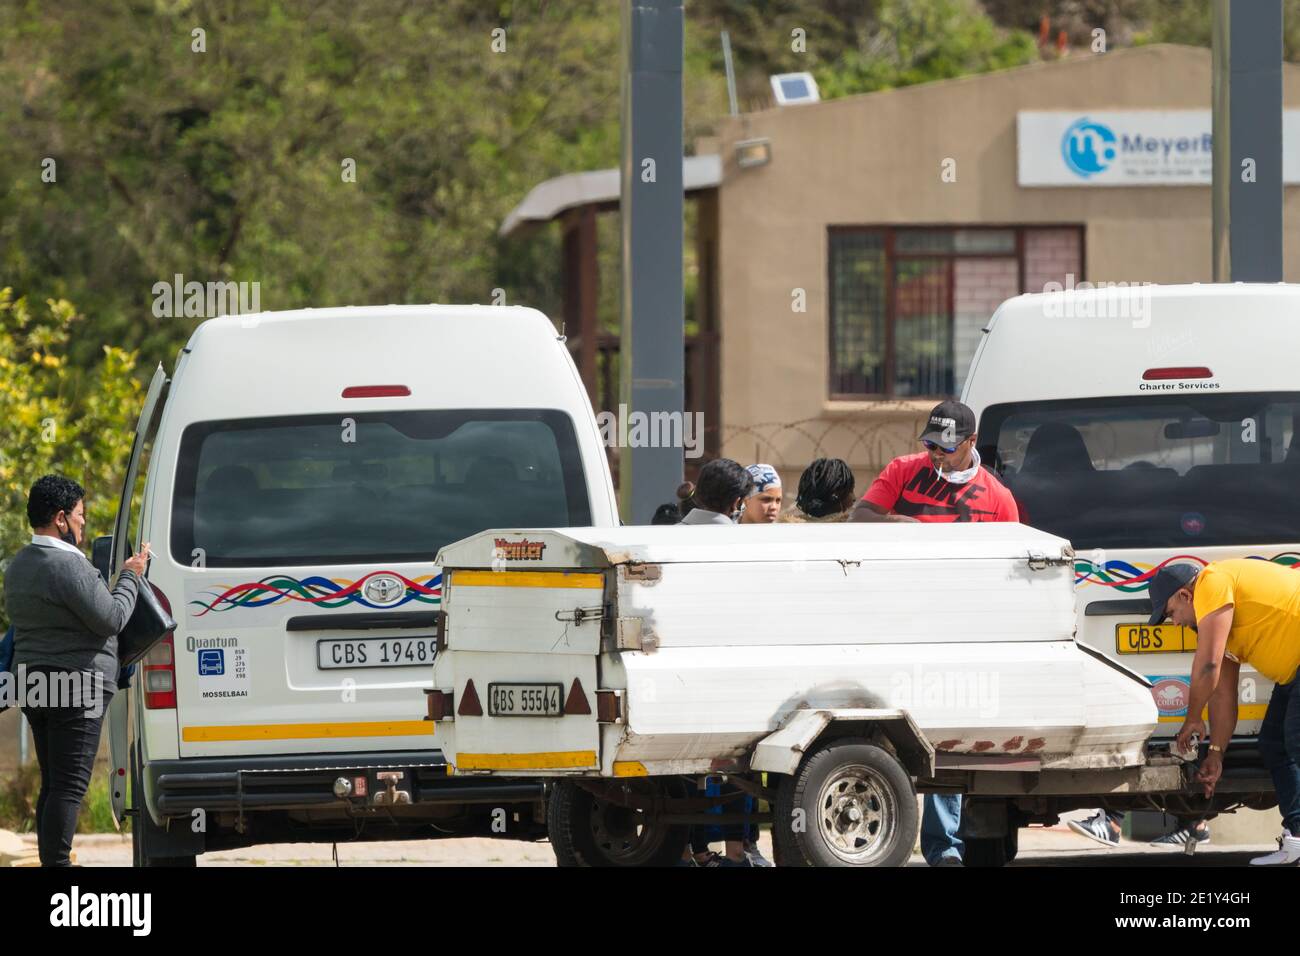 Servizio di taxi sudafricano presso una stazione di taxi nella Capo Occidentale del Sud Africa che mostra le persone o i pendolari in attesa a bordo dei loro veicoli Foto Stock